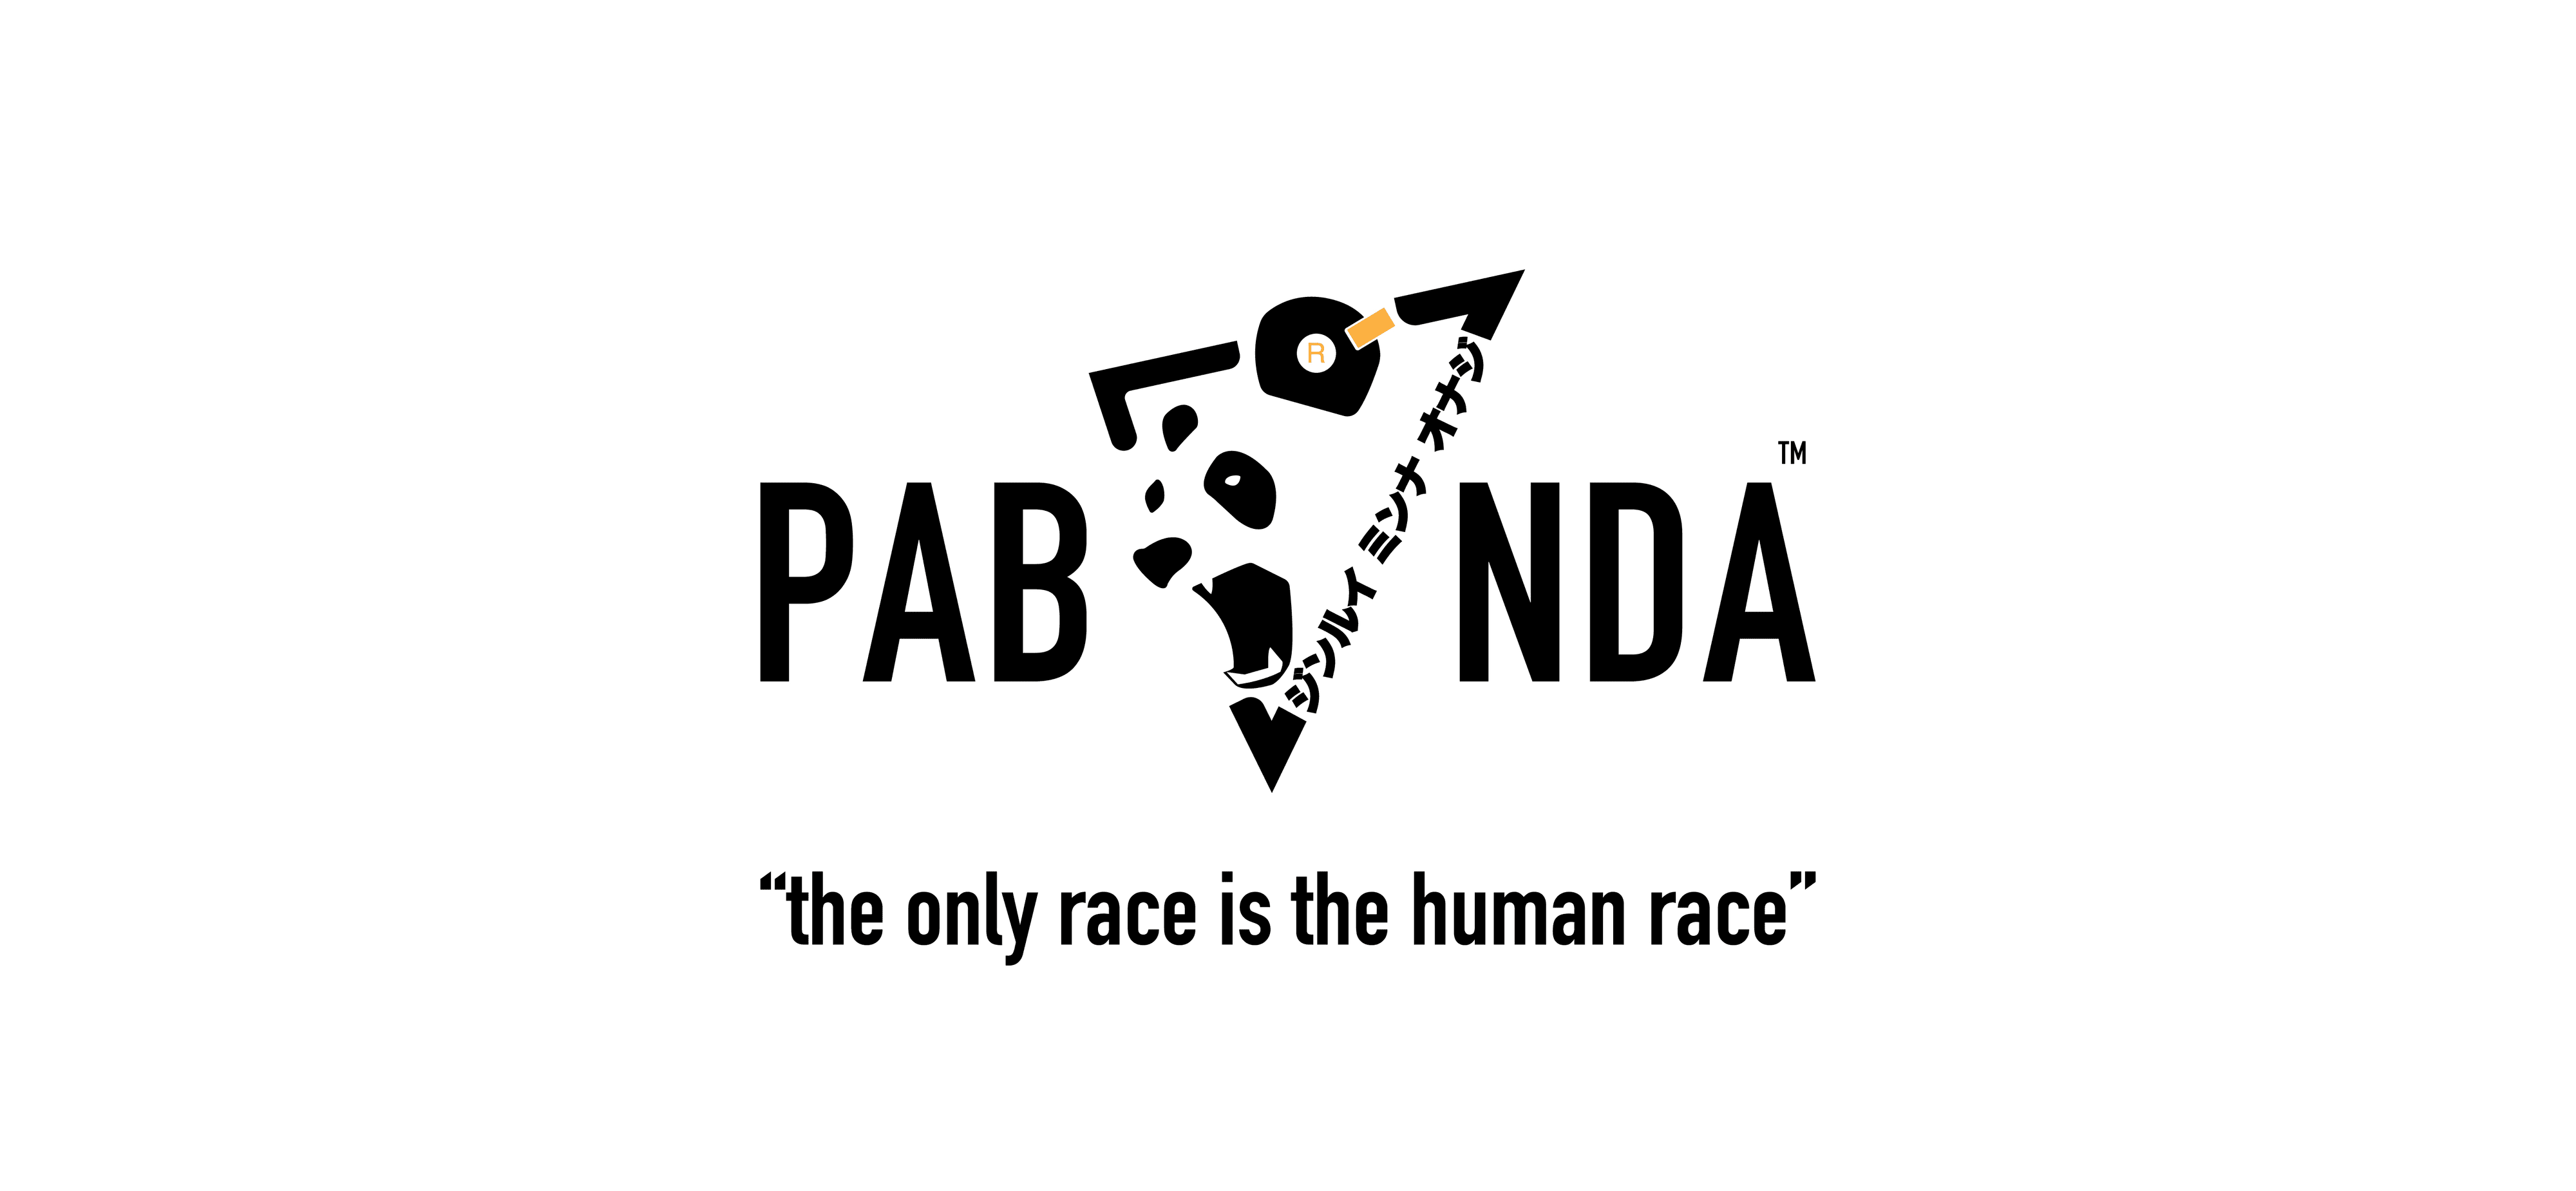 Pabanda バナー